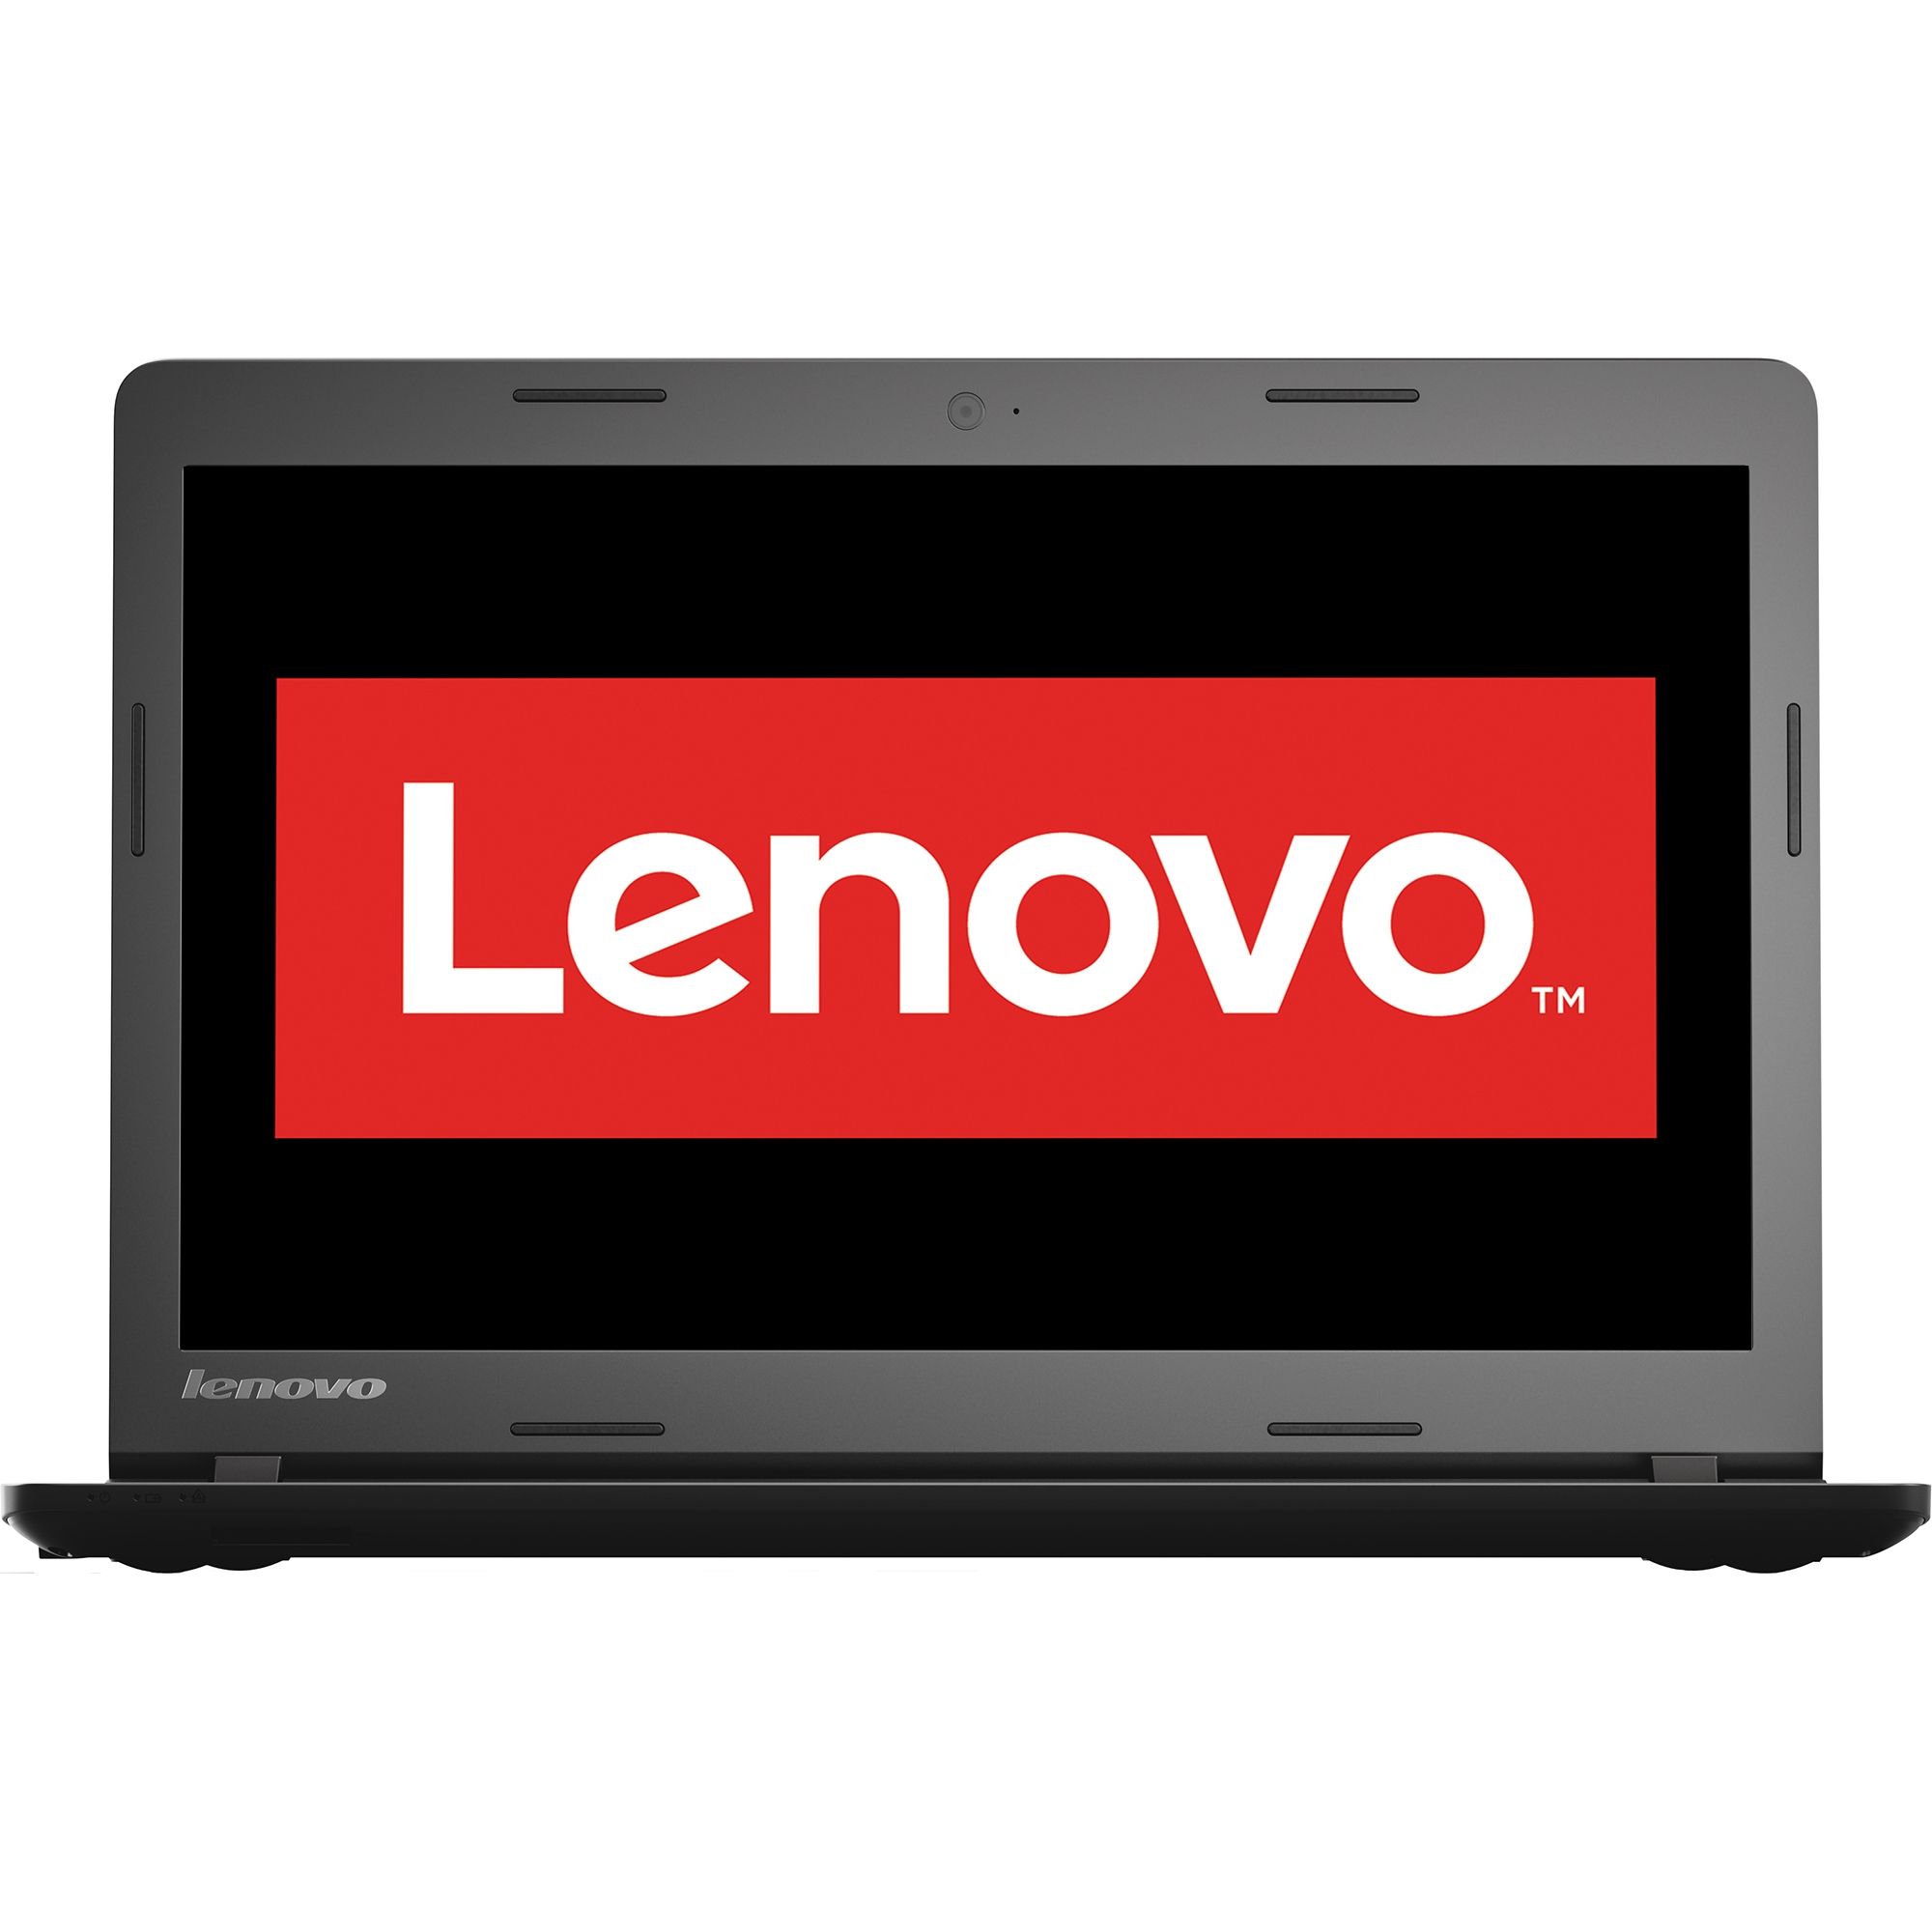  Laptop Lenovo IdeaPad 100-14, Intel Celeron N2840, 4GB DDR3, HDD 500GB, Intel HD Graphics, Free DOS 